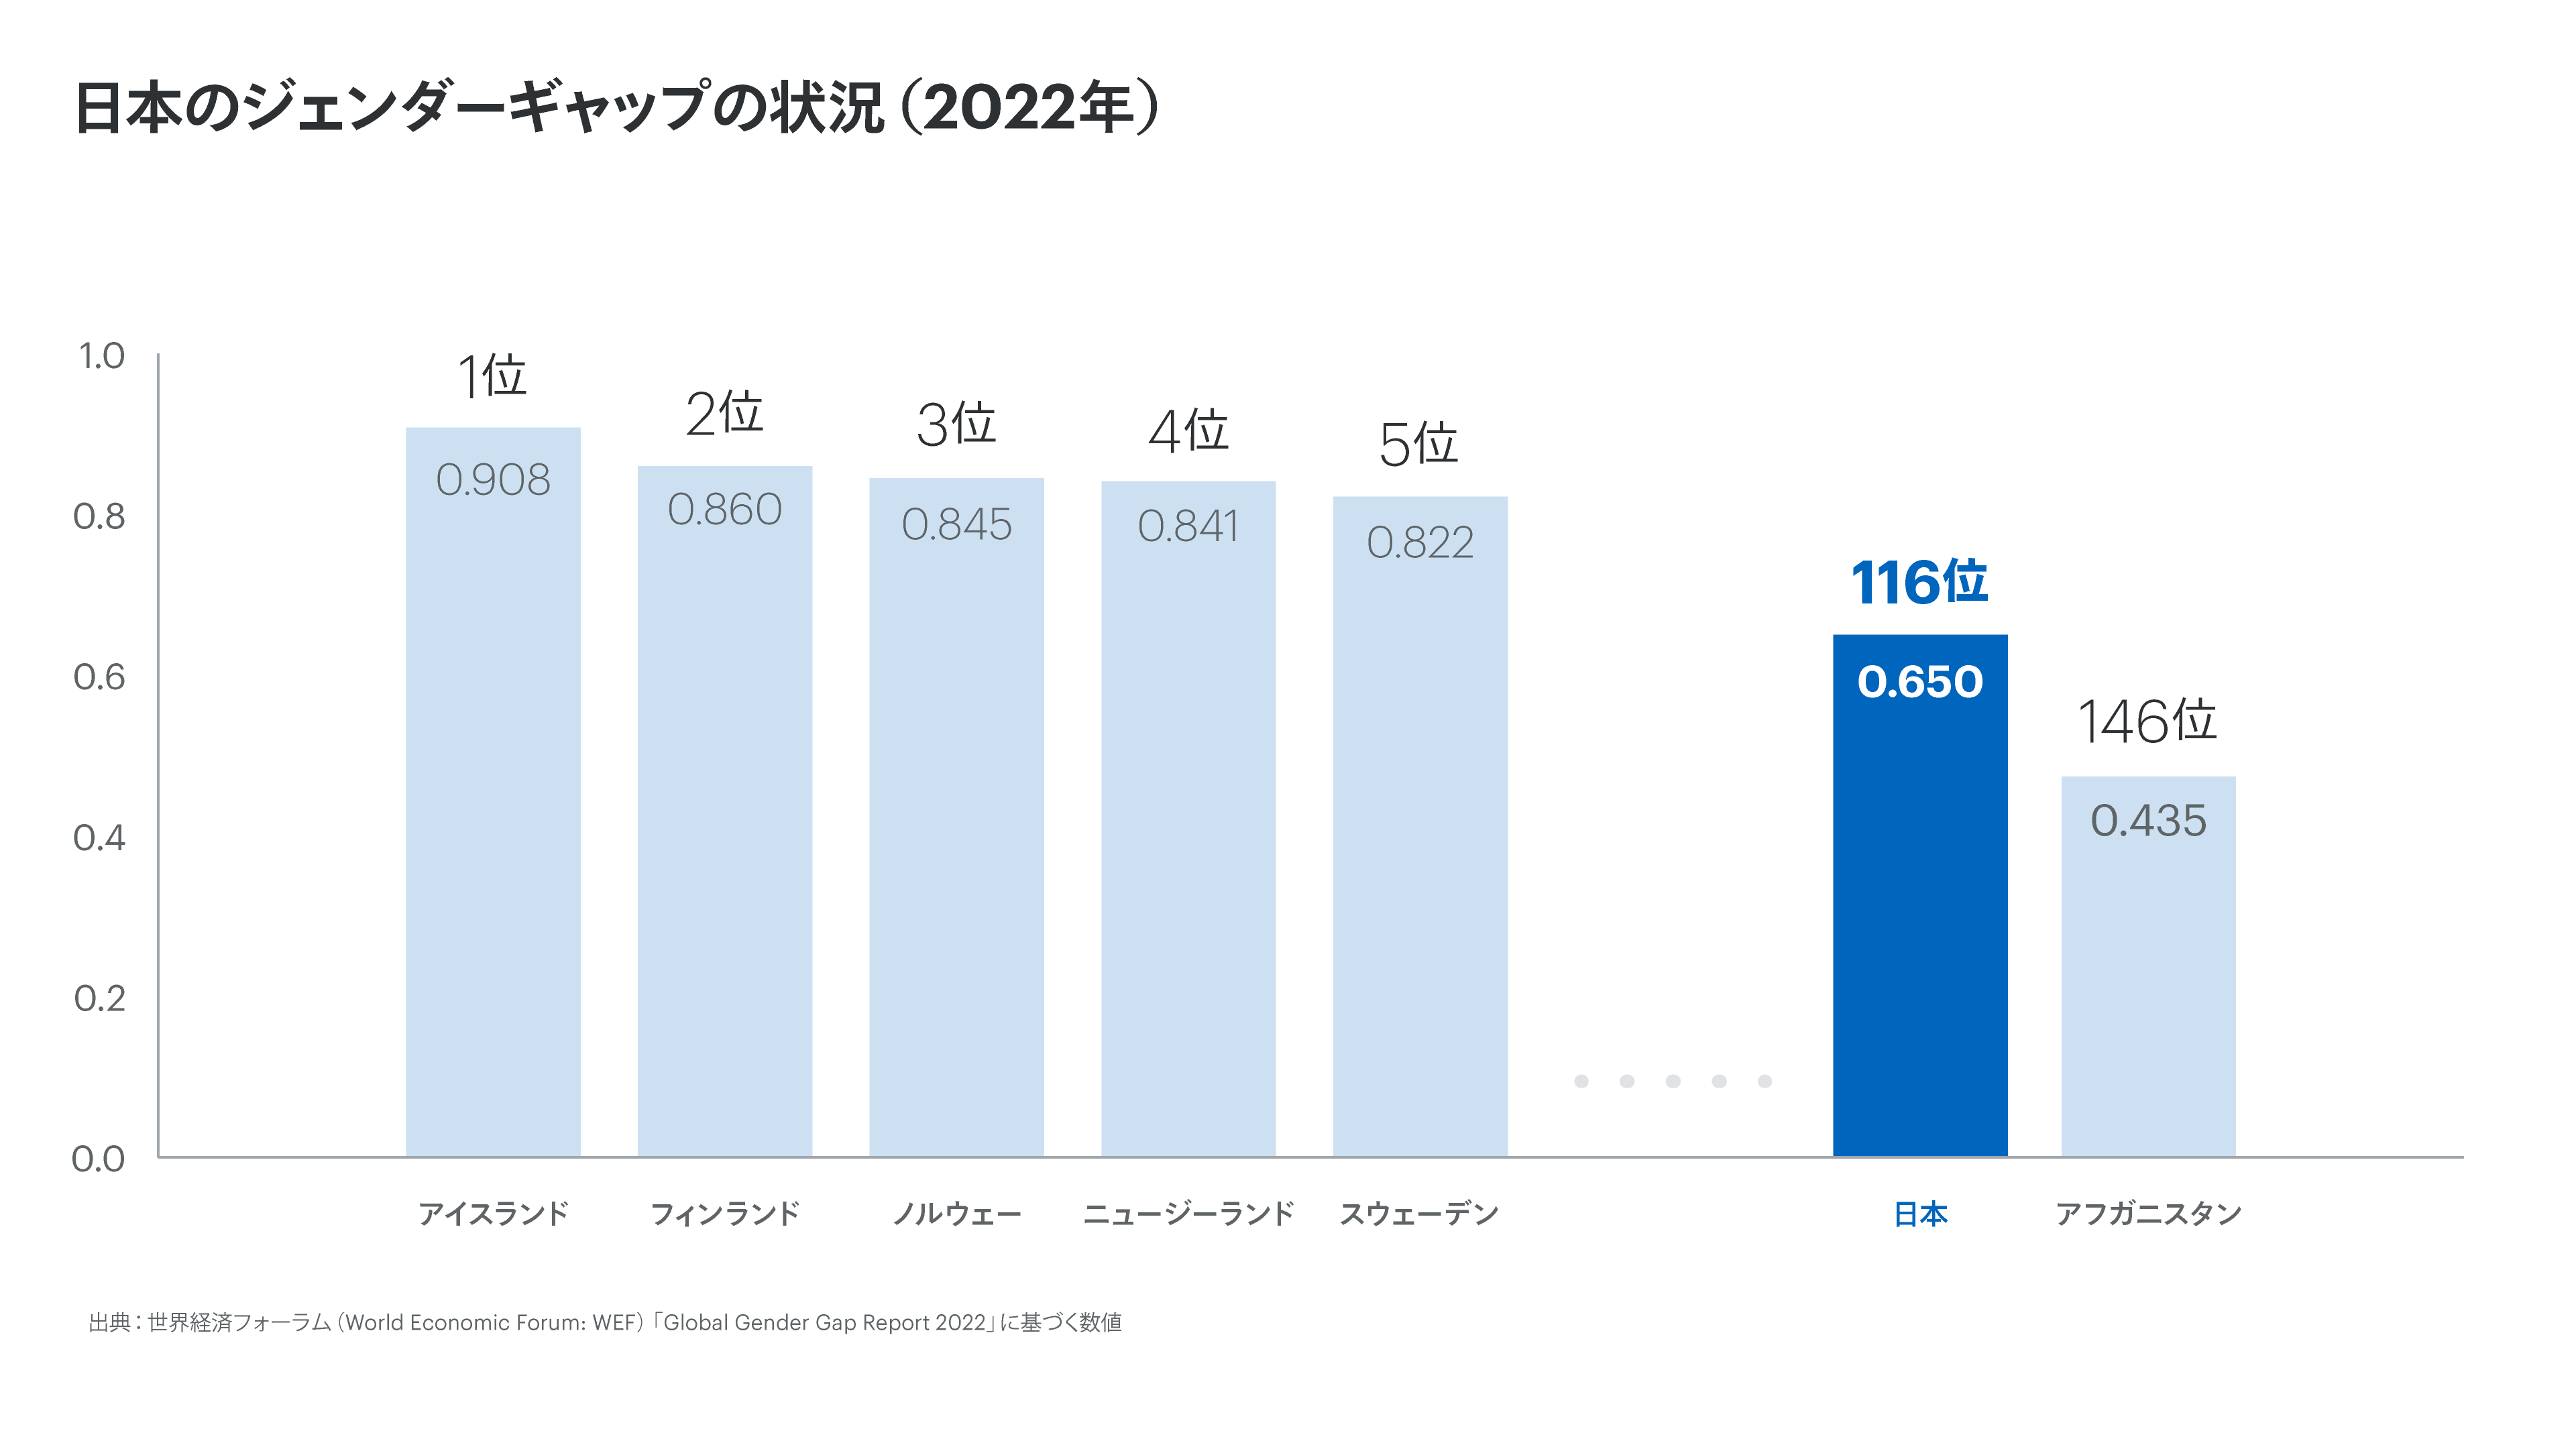 世界と日本のジェンダー・ギャップ指数とランキングの棒グラフ